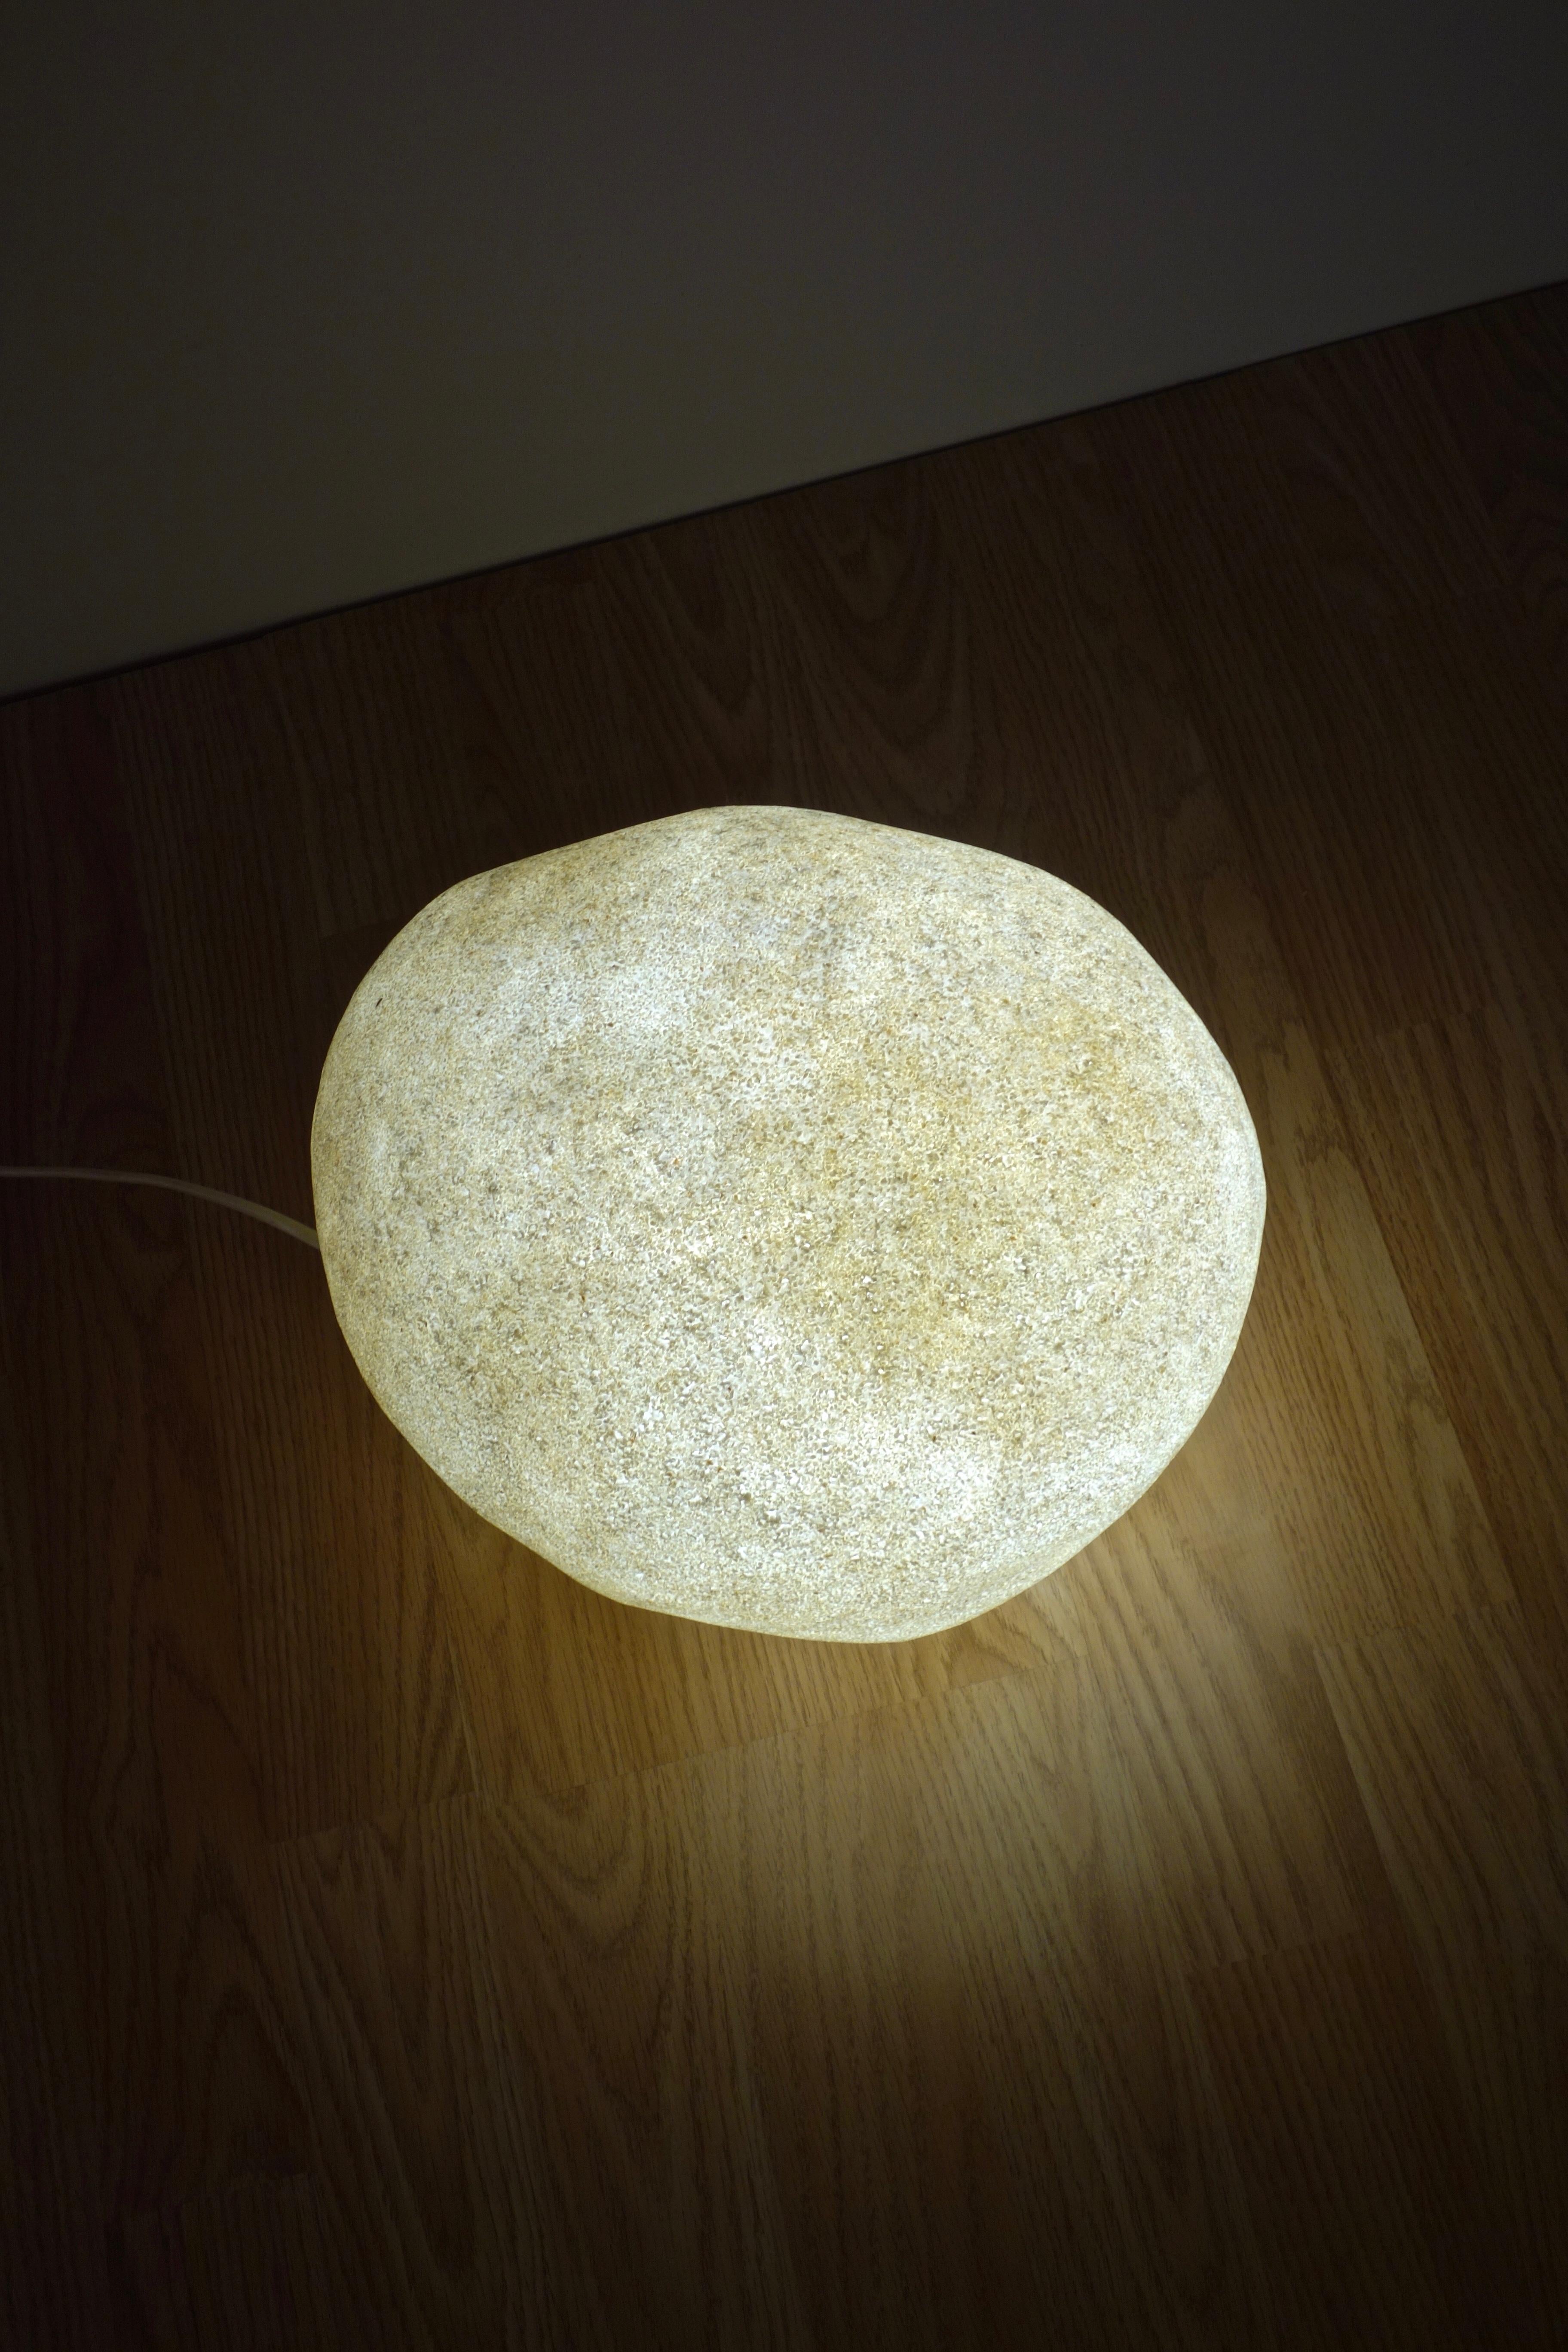 Dorra Rock Lampe von André Cazenave für Atelier A. Arnal, Frankreich 1970er Jahre (Moderne der Mitte des Jahrhunderts)